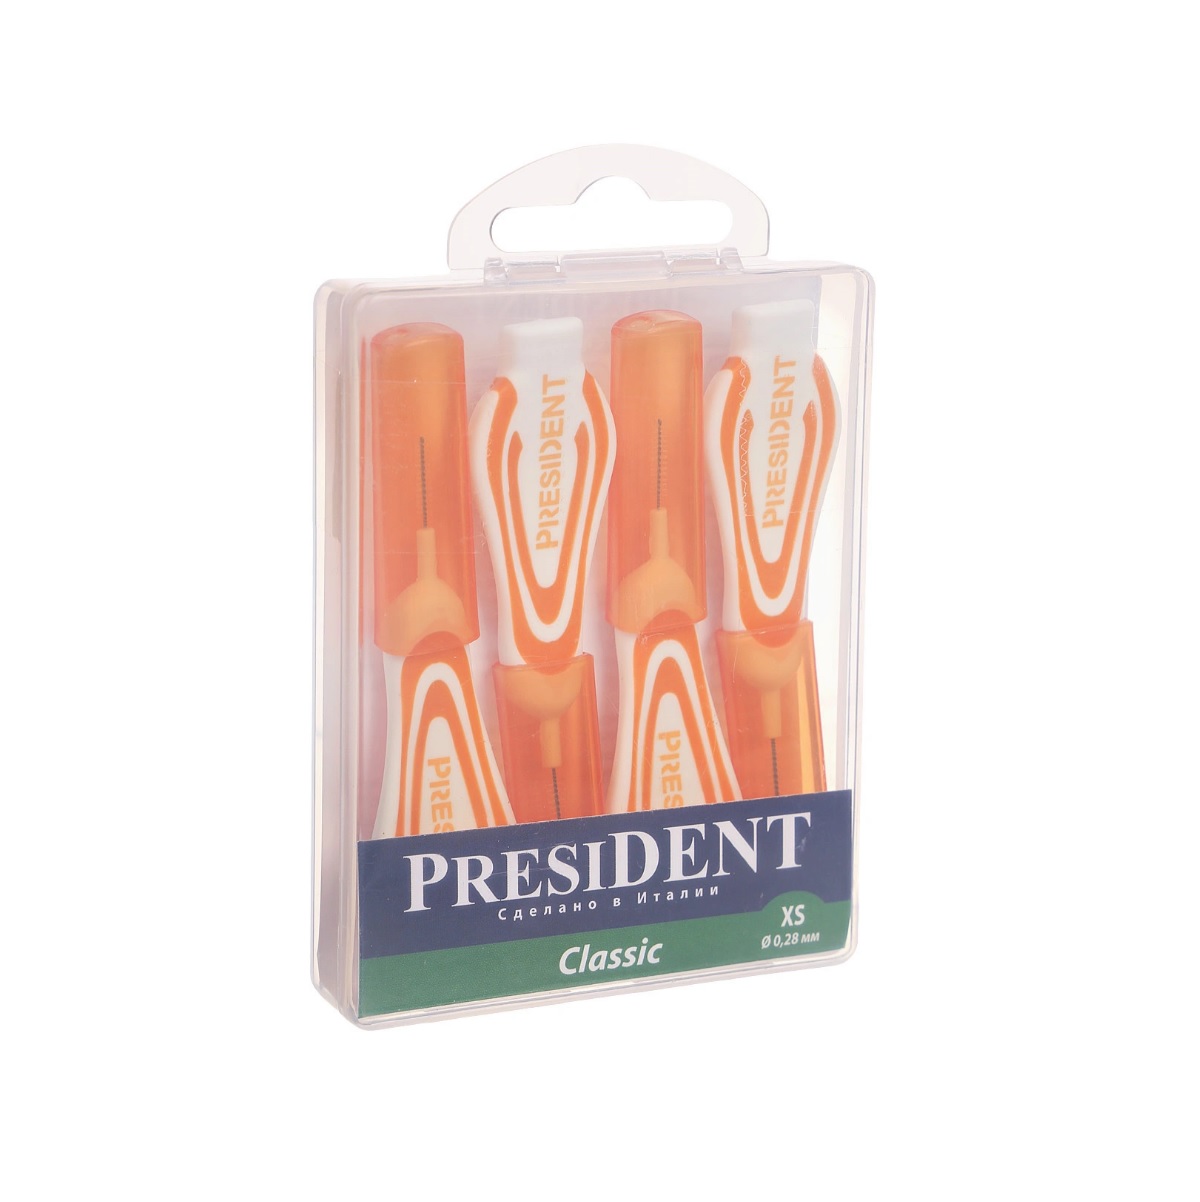 Межзубные ершики President Classic xs 0,28 мм межзубные ершики зубочистки president р s